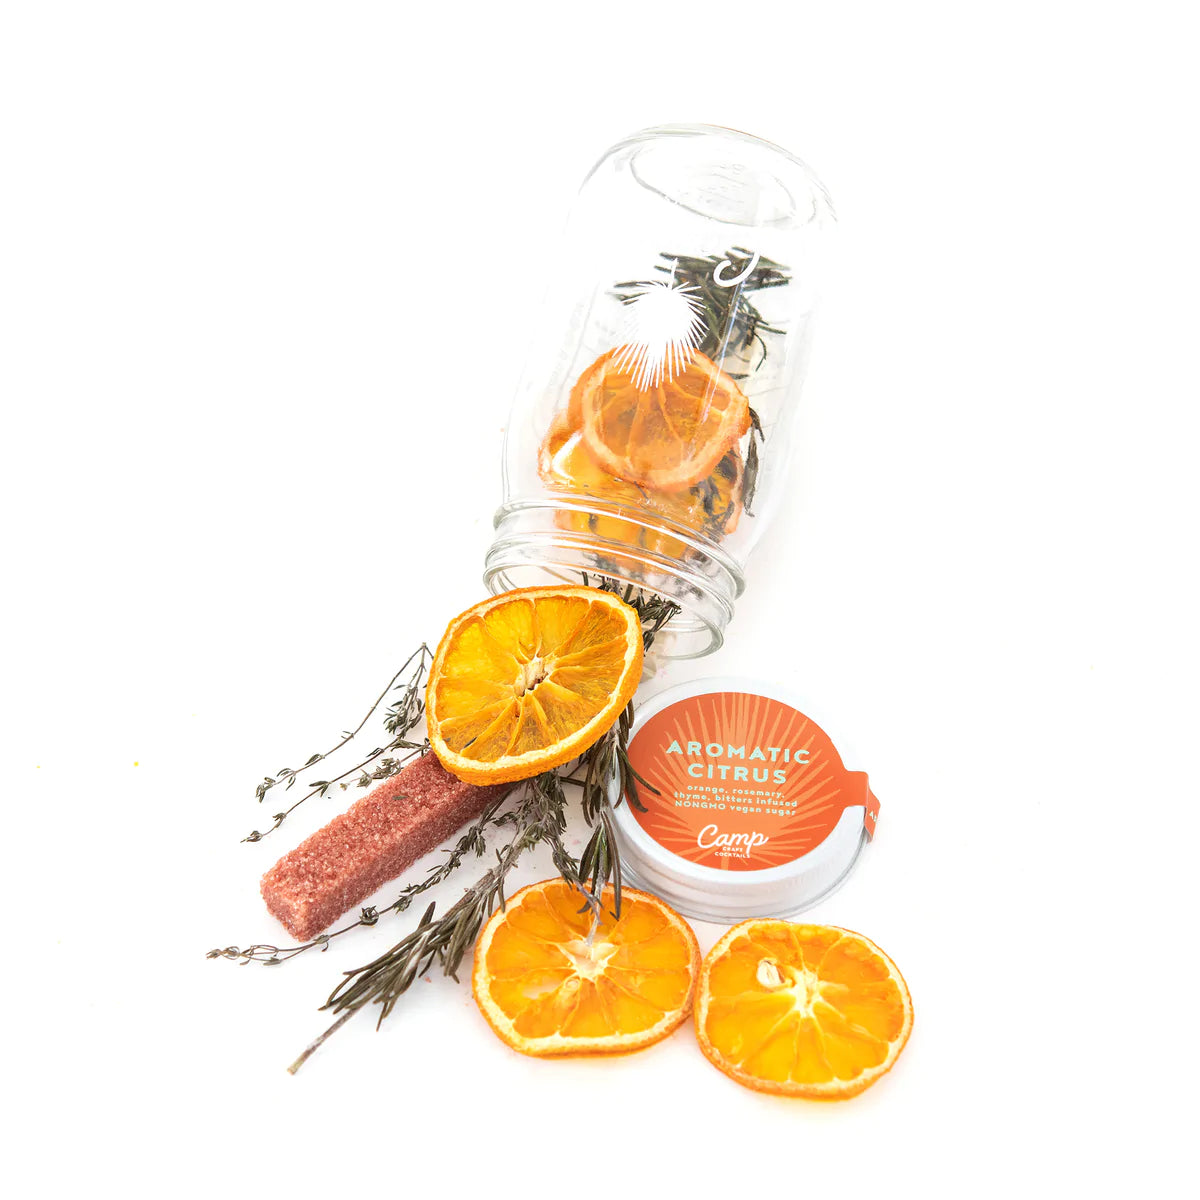 Aromatic Citrus | Camp Craft Cocktails